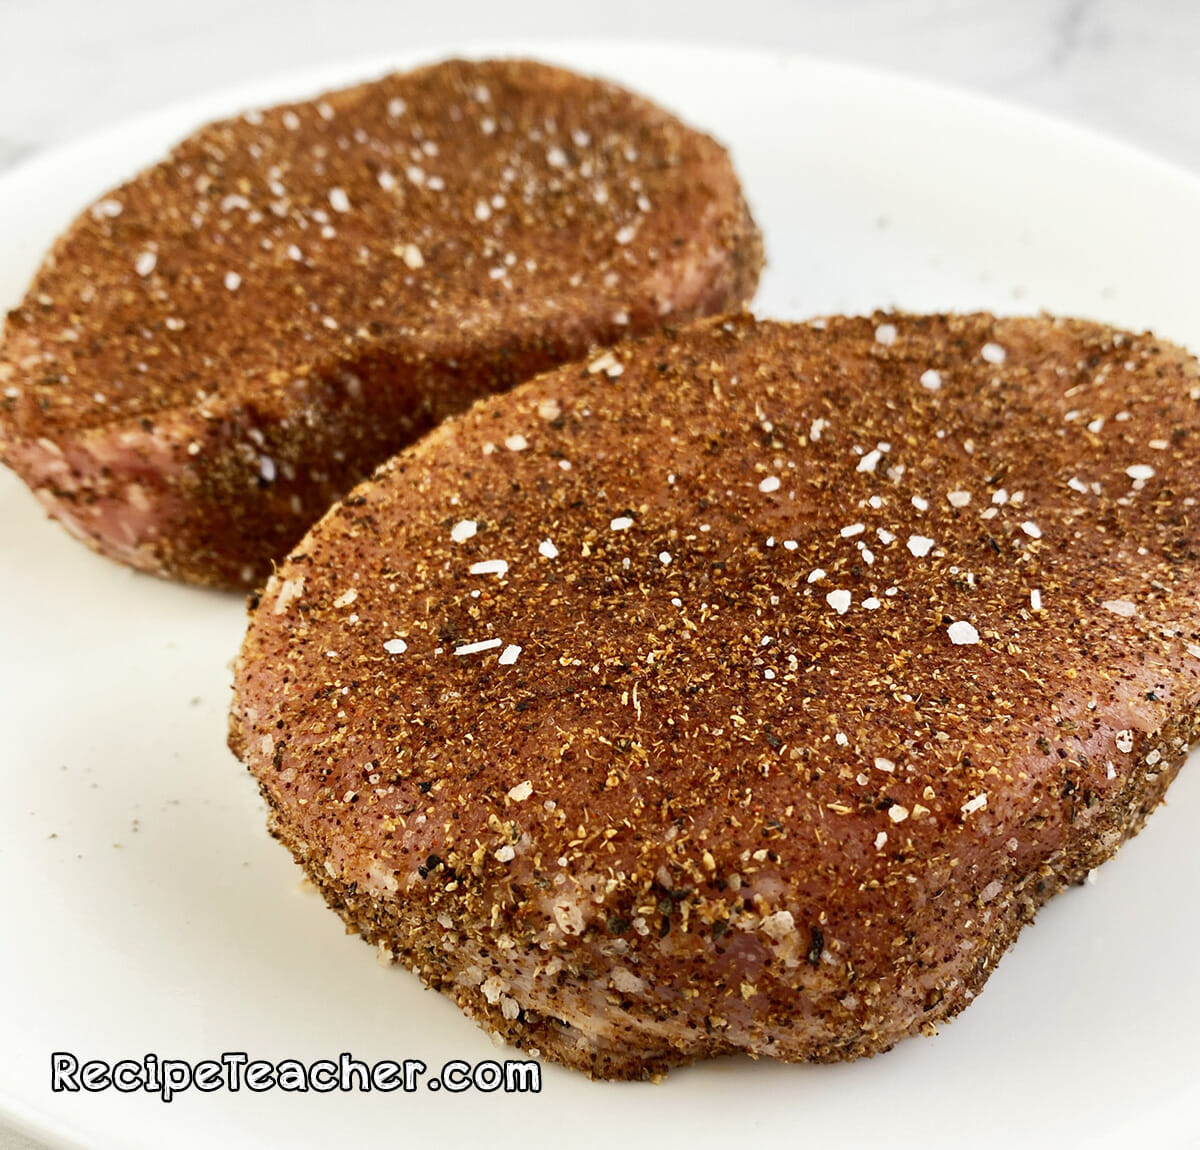 Recipe for coriander crusted pork chops